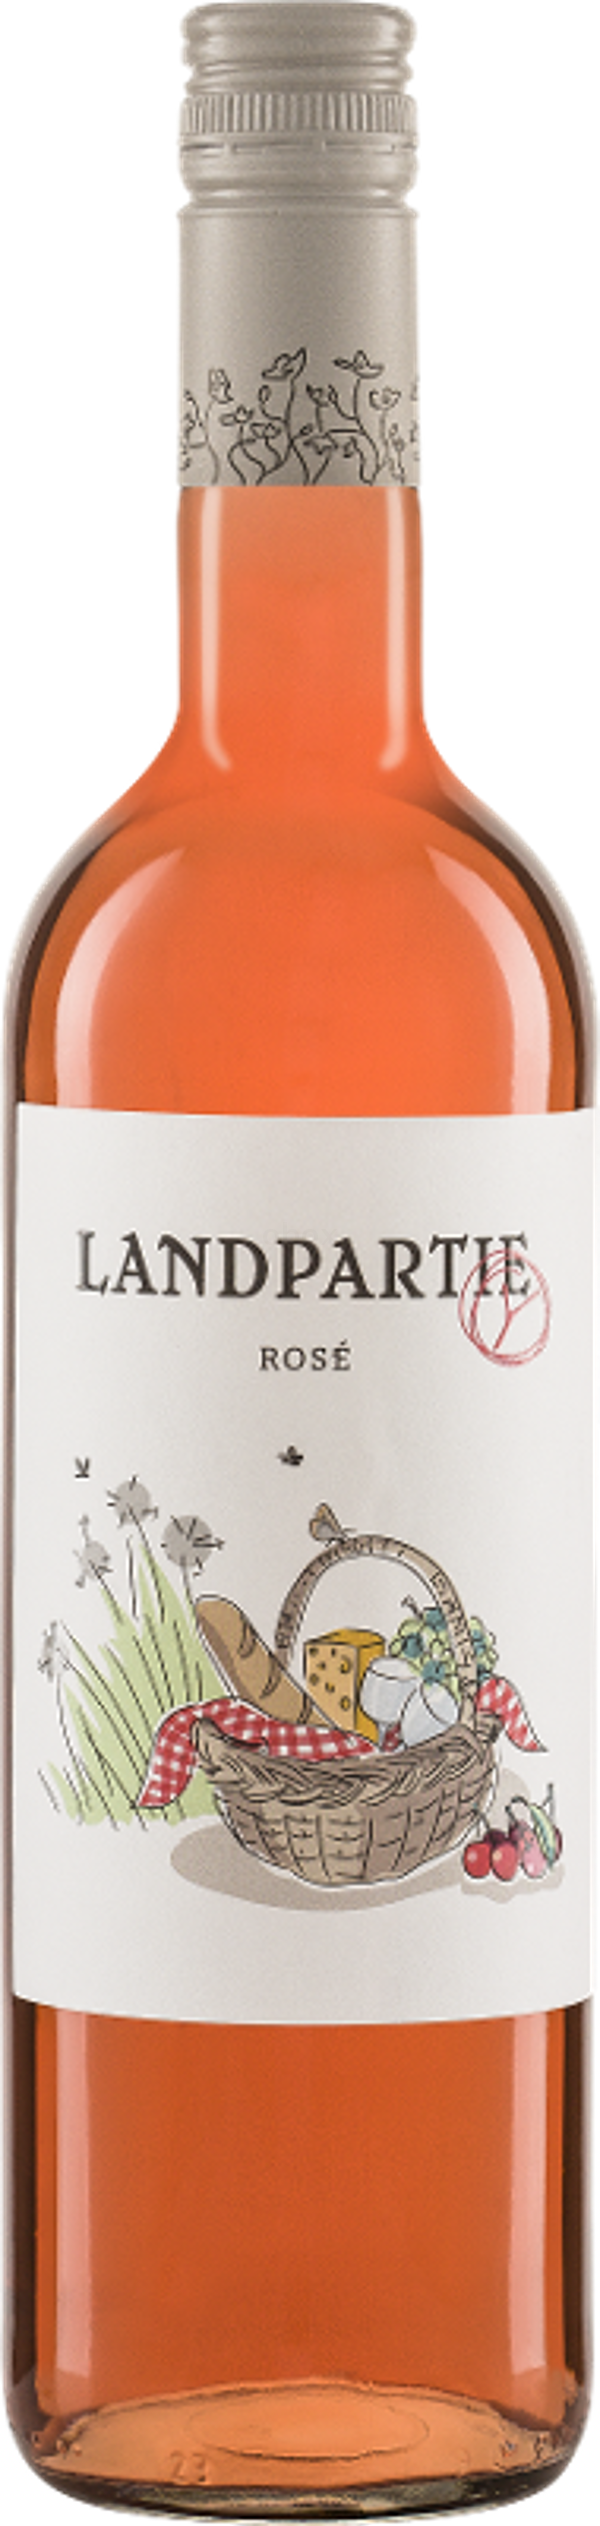 Produktfoto zu LANDPARTY Rosé 2020